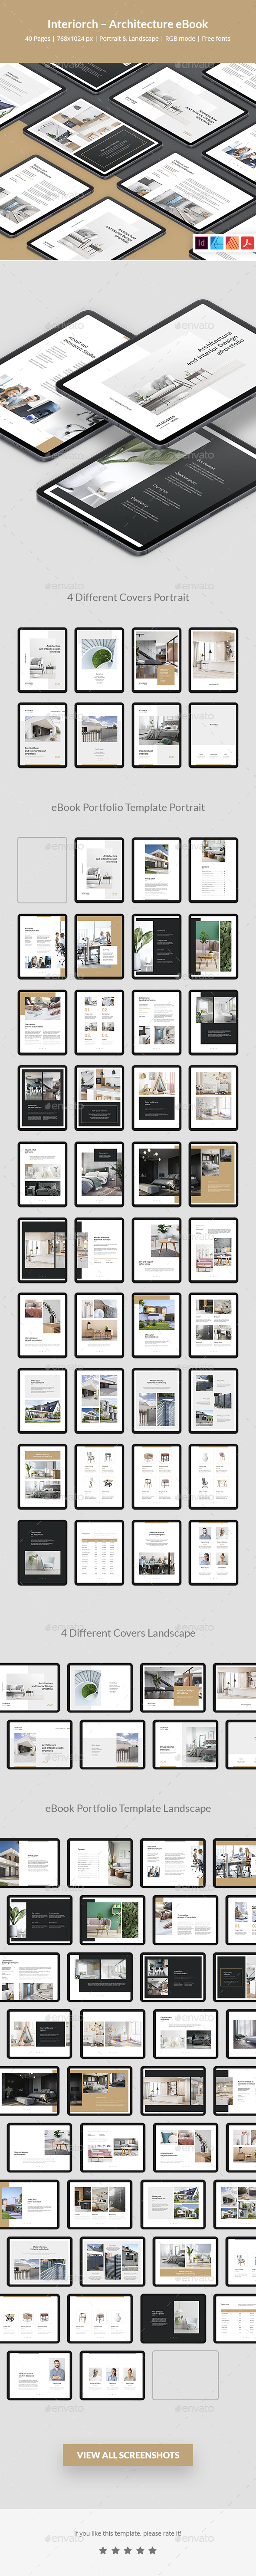 [DOWNLOAD]Interiorch – Architecture and Interior Design eBook